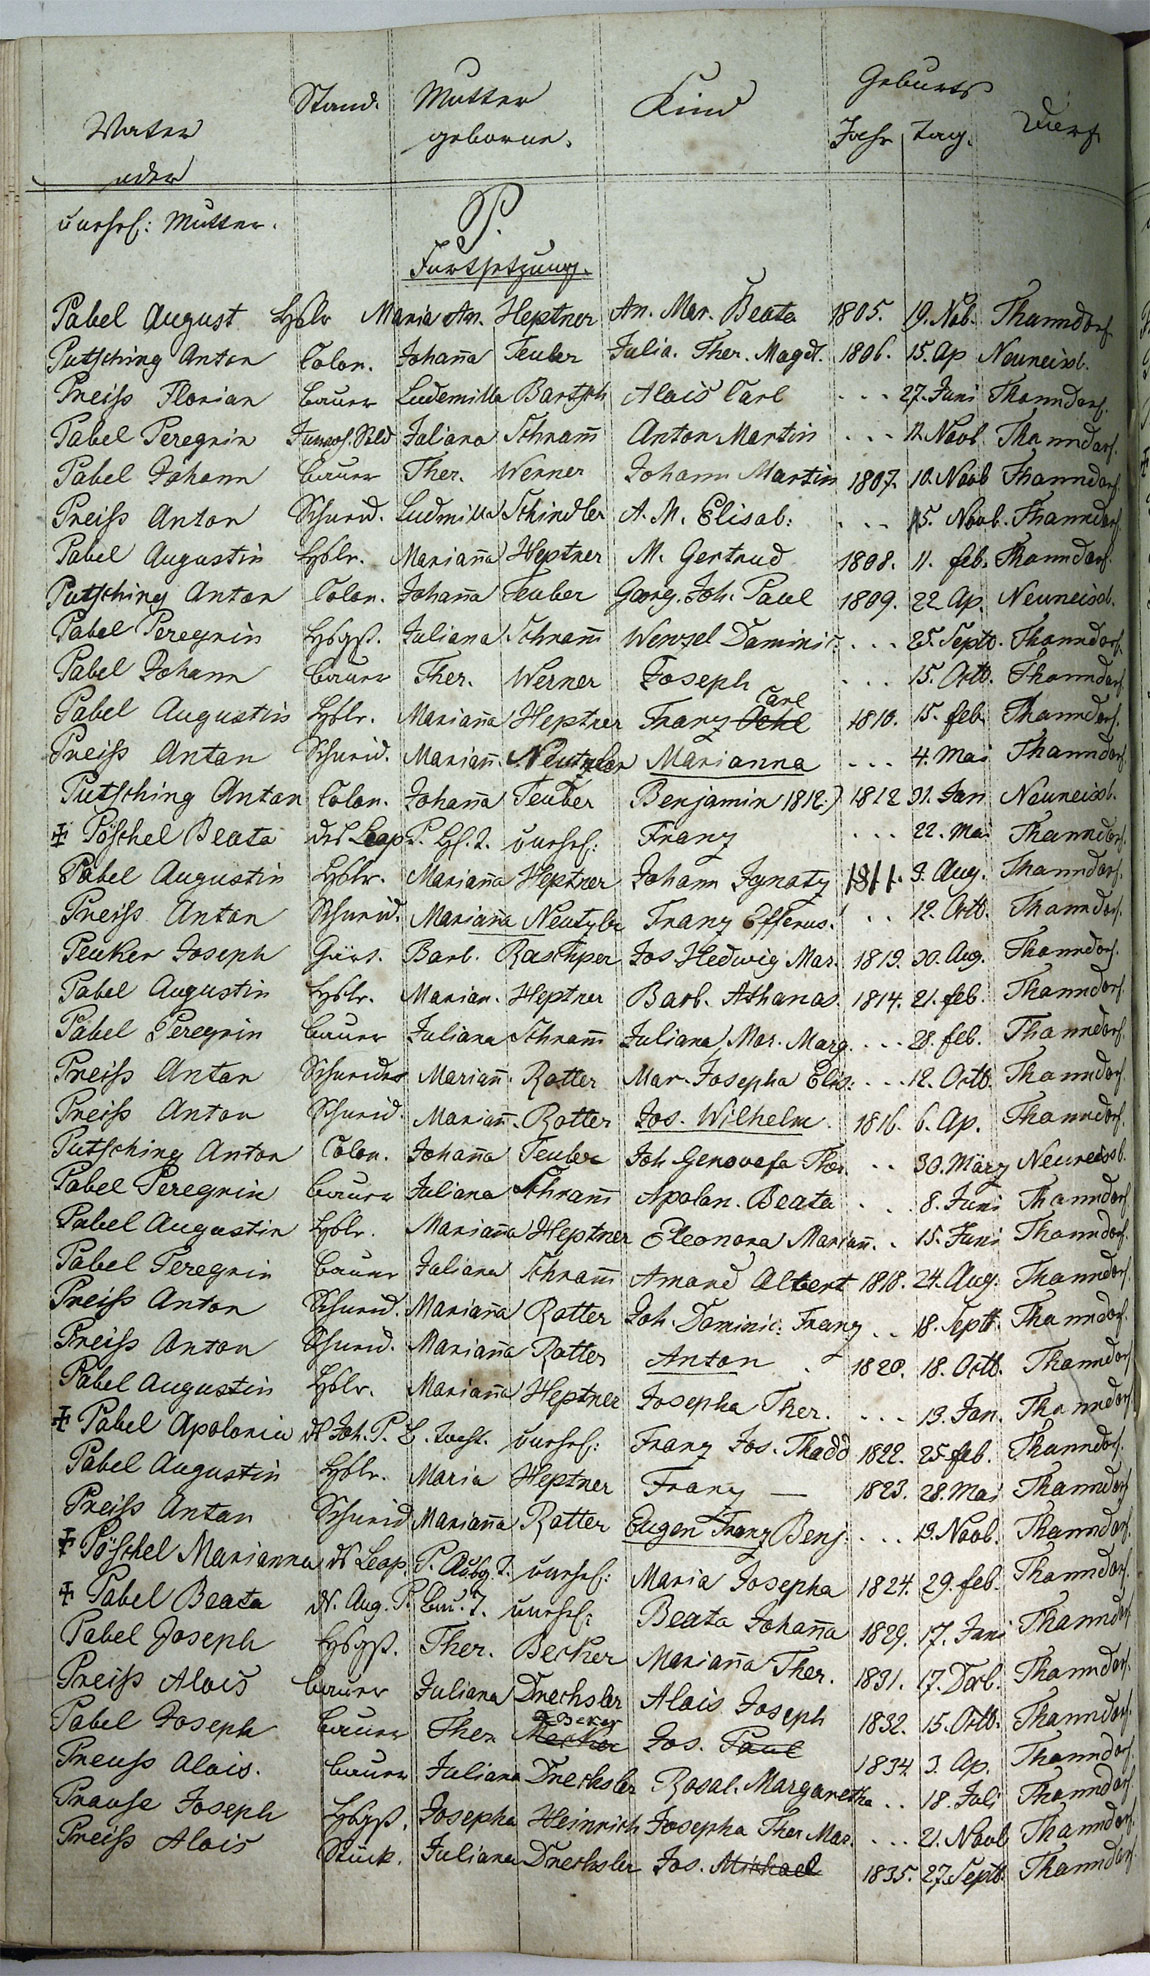 Taufregister 1770 - 1889 Seite 126